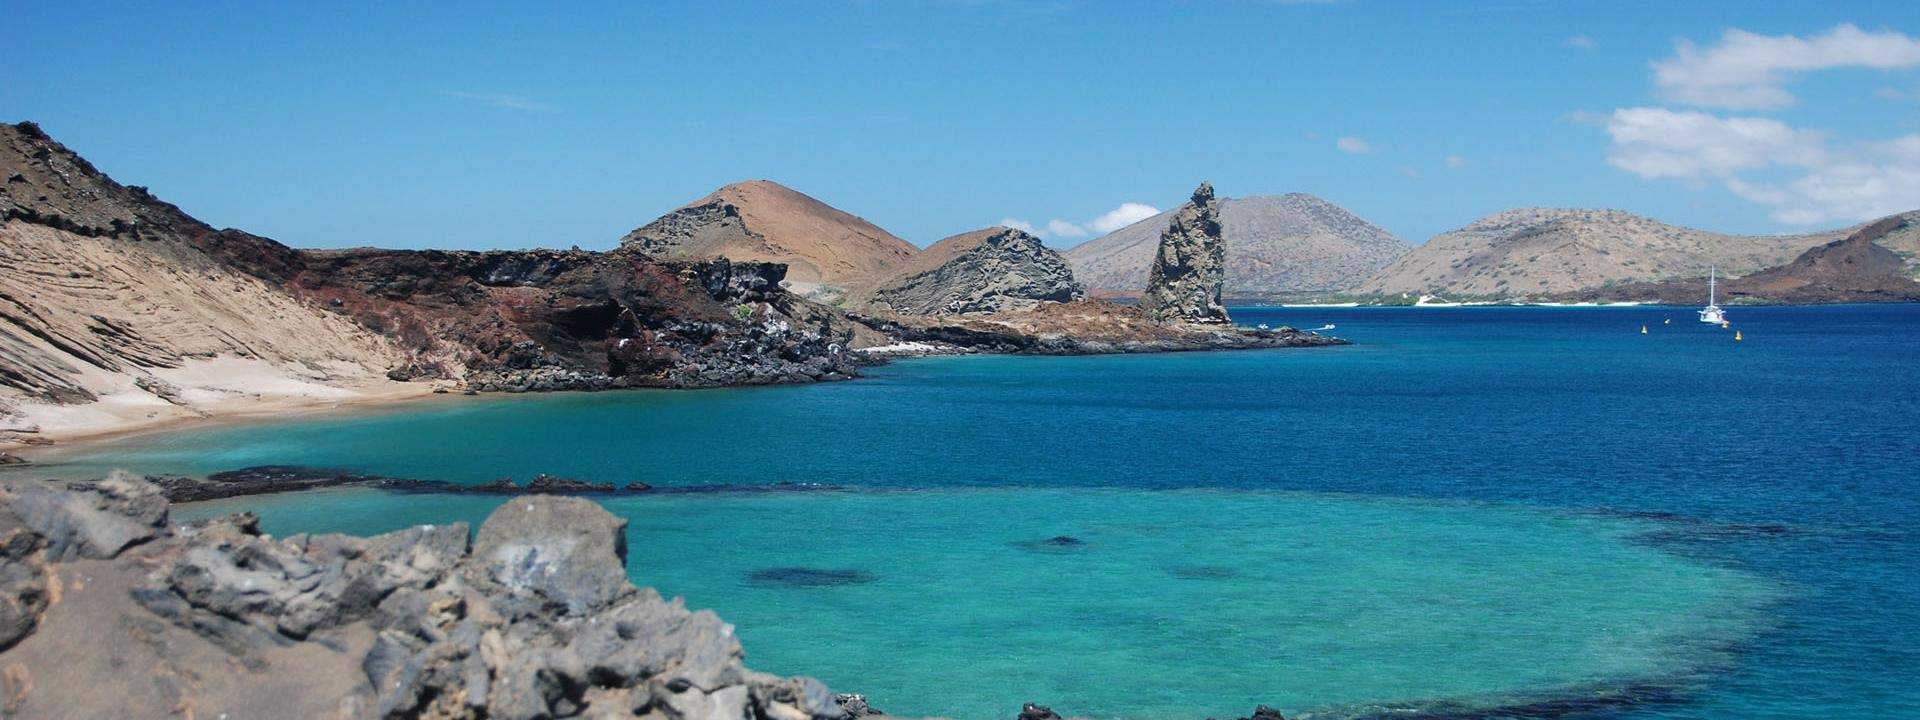 Segeln Sie auf dem Pazifischen Ozean, inmitten der schönsten Inseln des Galapagosarchipels